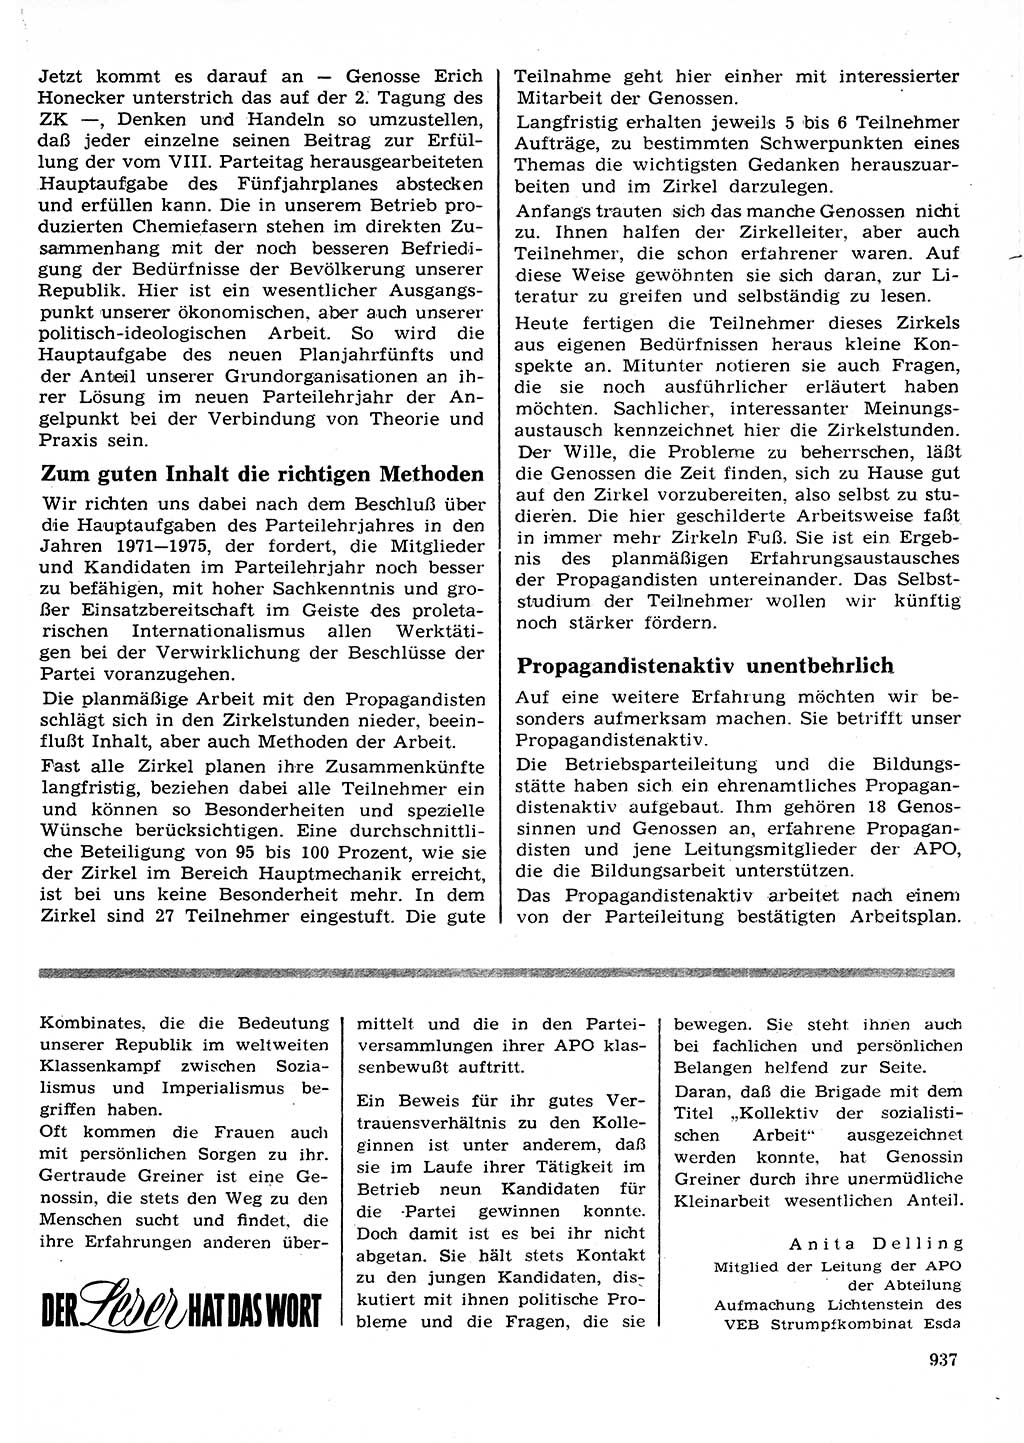 Neuer Weg (NW), Organ des Zentralkomitees (ZK) der SED (Sozialistische Einheitspartei Deutschlands) für Fragen des Parteilebens, 26. Jahrgang [Deutsche Demokratische Republik (DDR)] 1971, Seite 937 (NW ZK SED DDR 1971, S. 937)